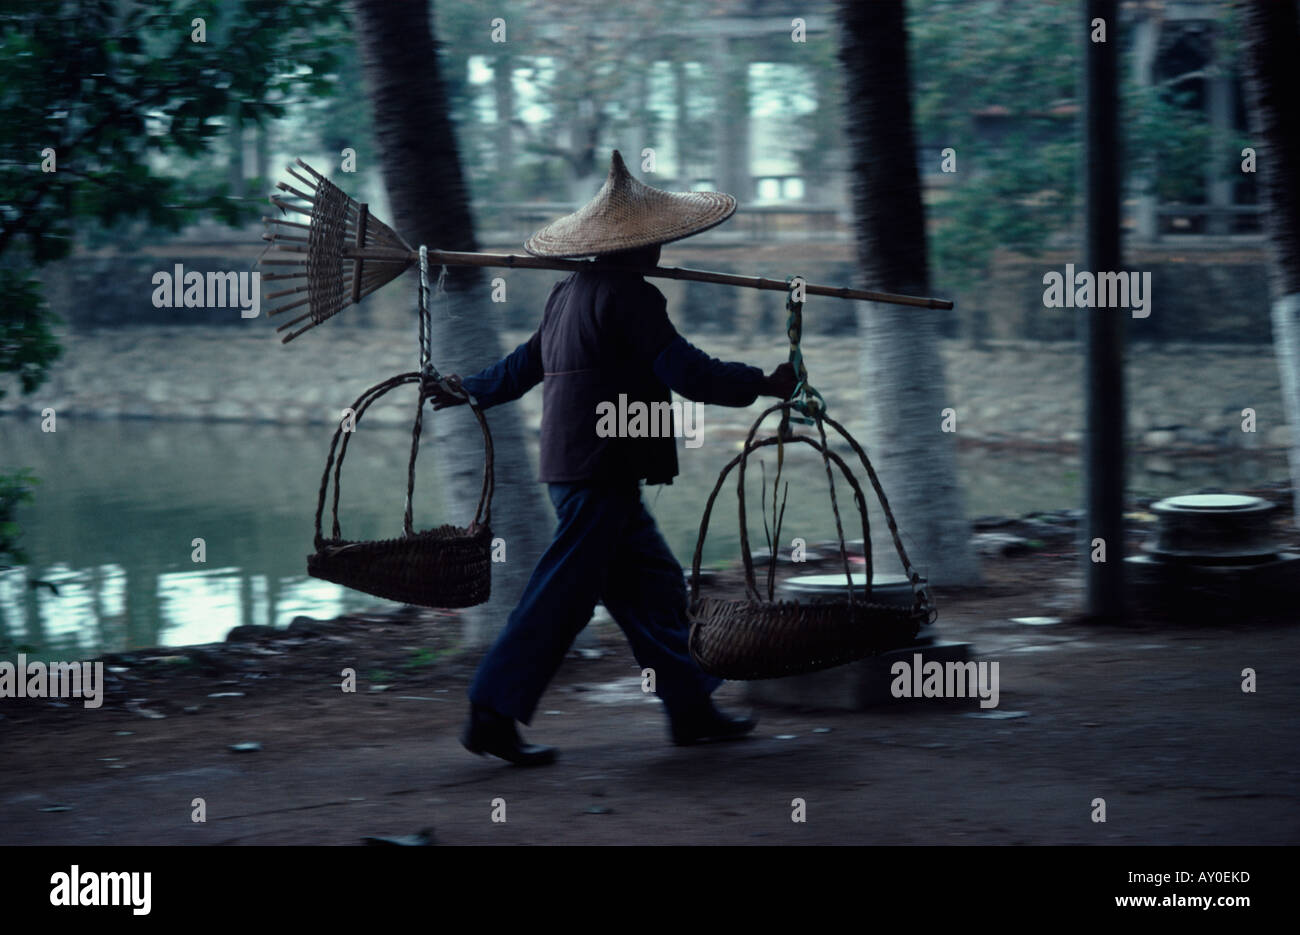 Travailleur chinois portant un large chapeau pointu reed pôle comptable avec deux paniers aux deux extrémités kwangchow chine fareast Asie Banque D'Images